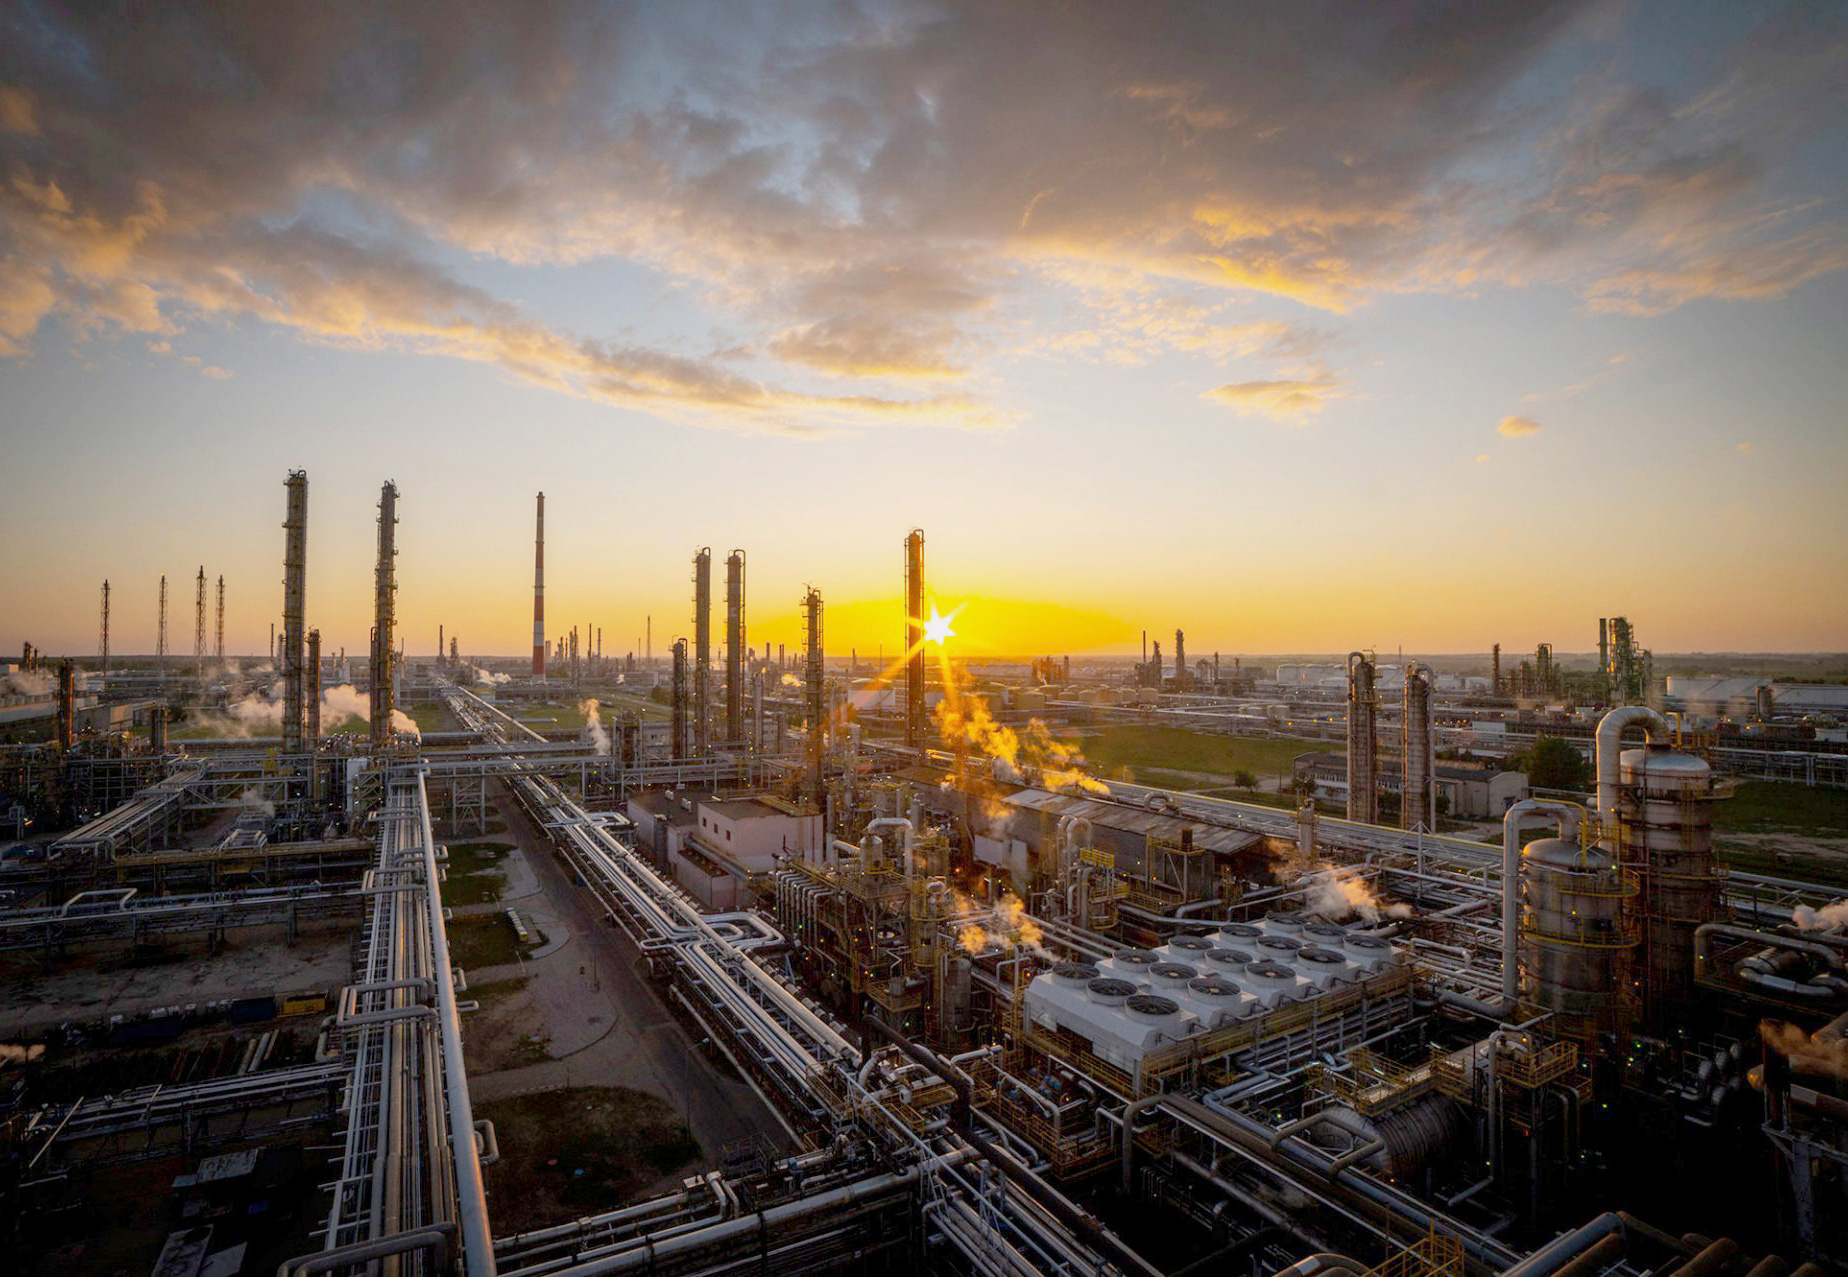 ABB-Technologie treibt Produktion und Energieeffizienz von Olefin III, Europas grösstem Petrochemie-Investitionsvorhaben seit 20 Jahren